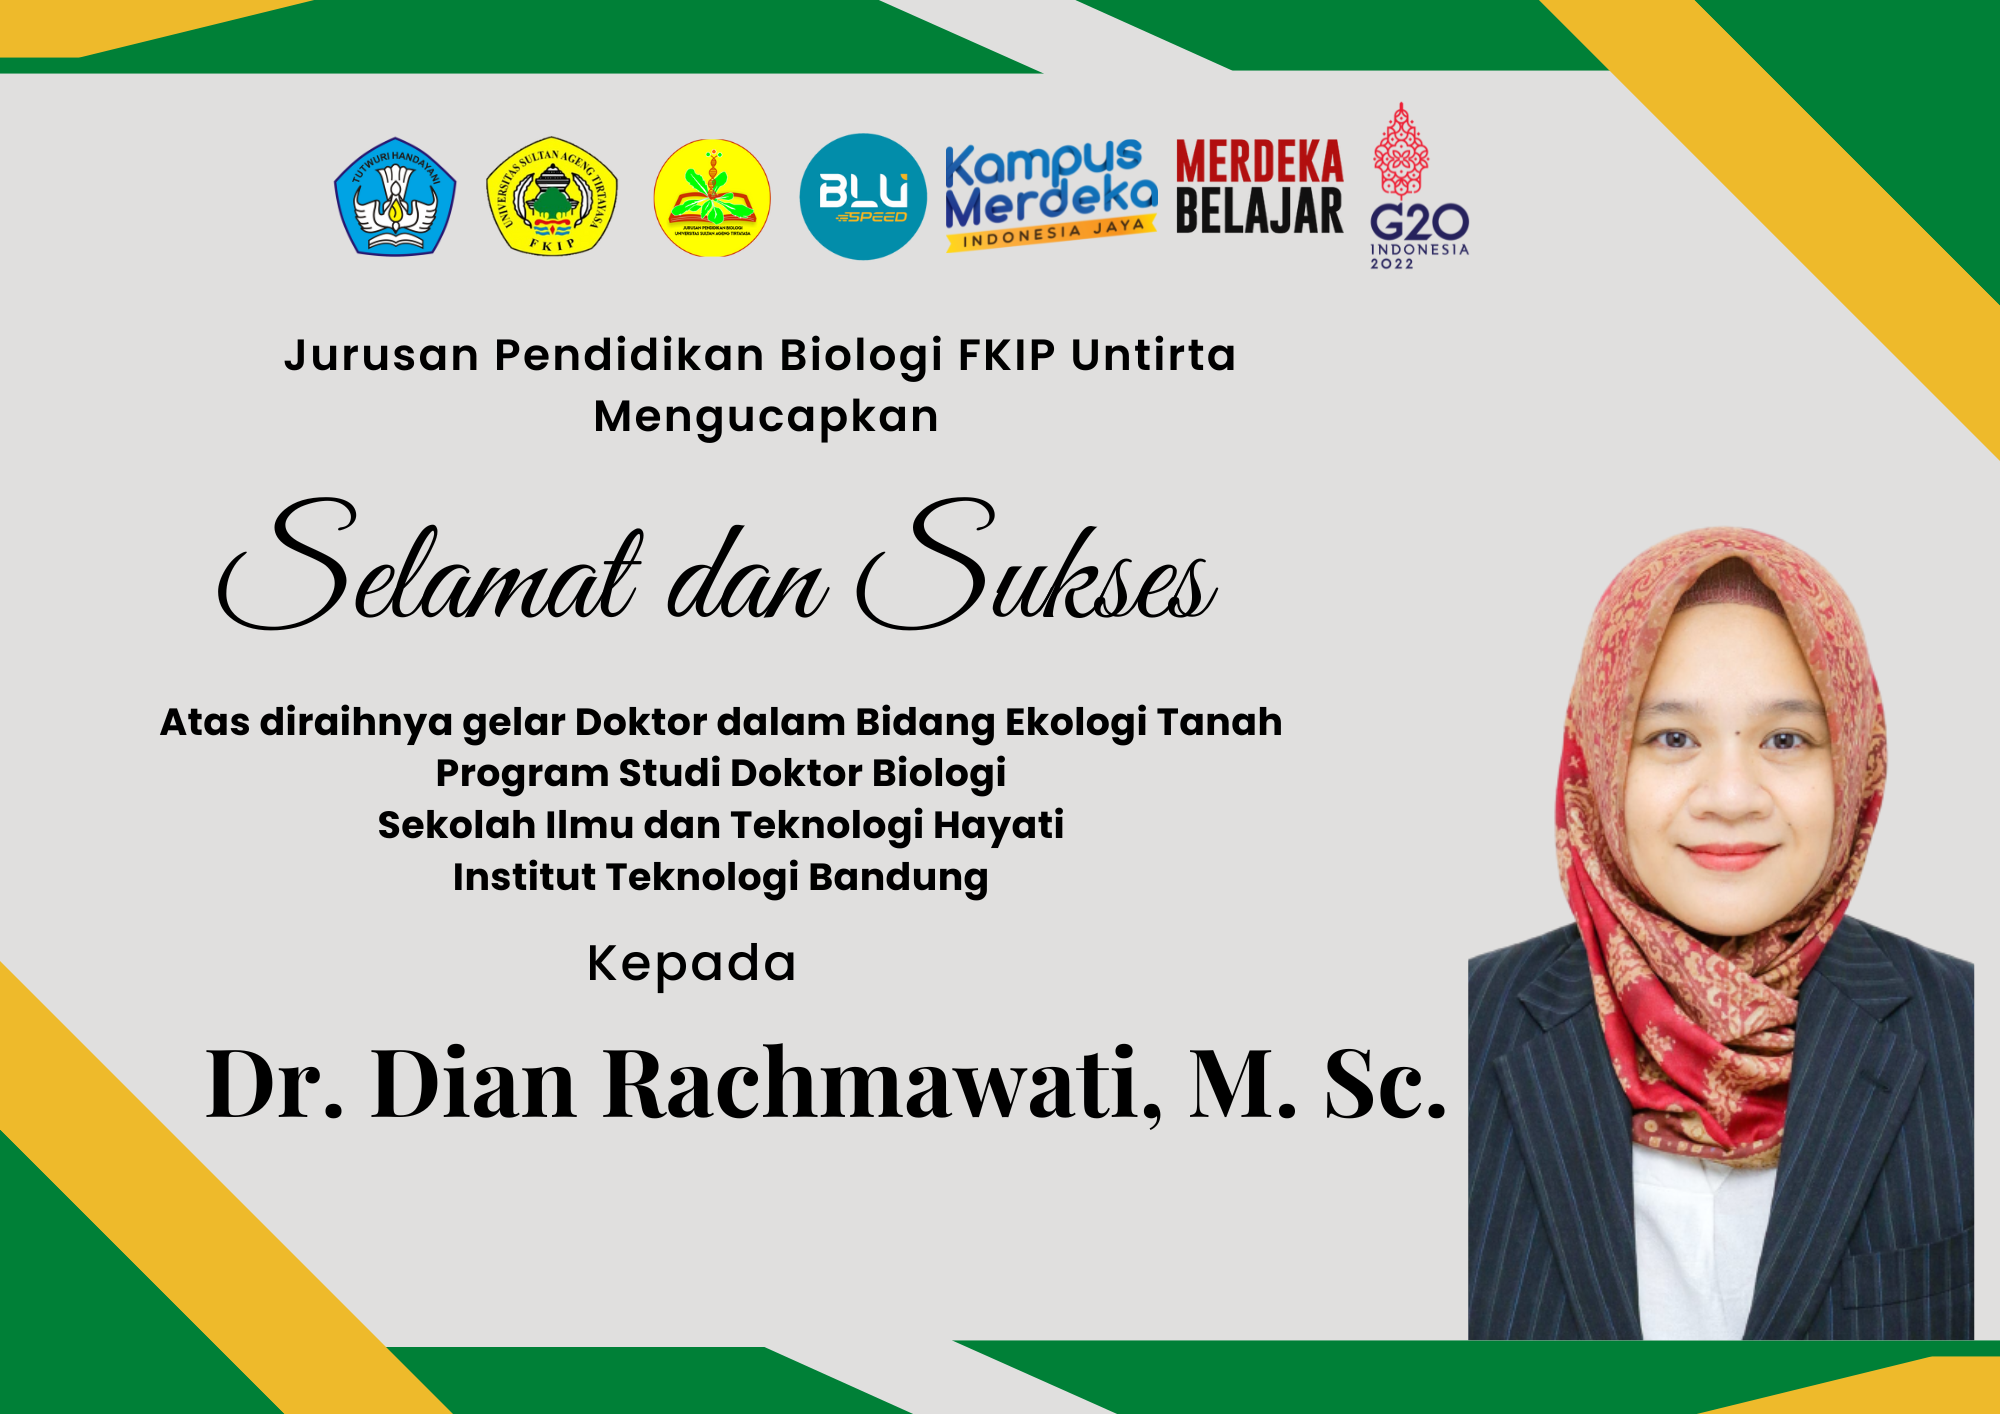 Selamat kepada Dr. Dian Rachmawati, M. Sc. atas diraihnya gelar doktor di ITB